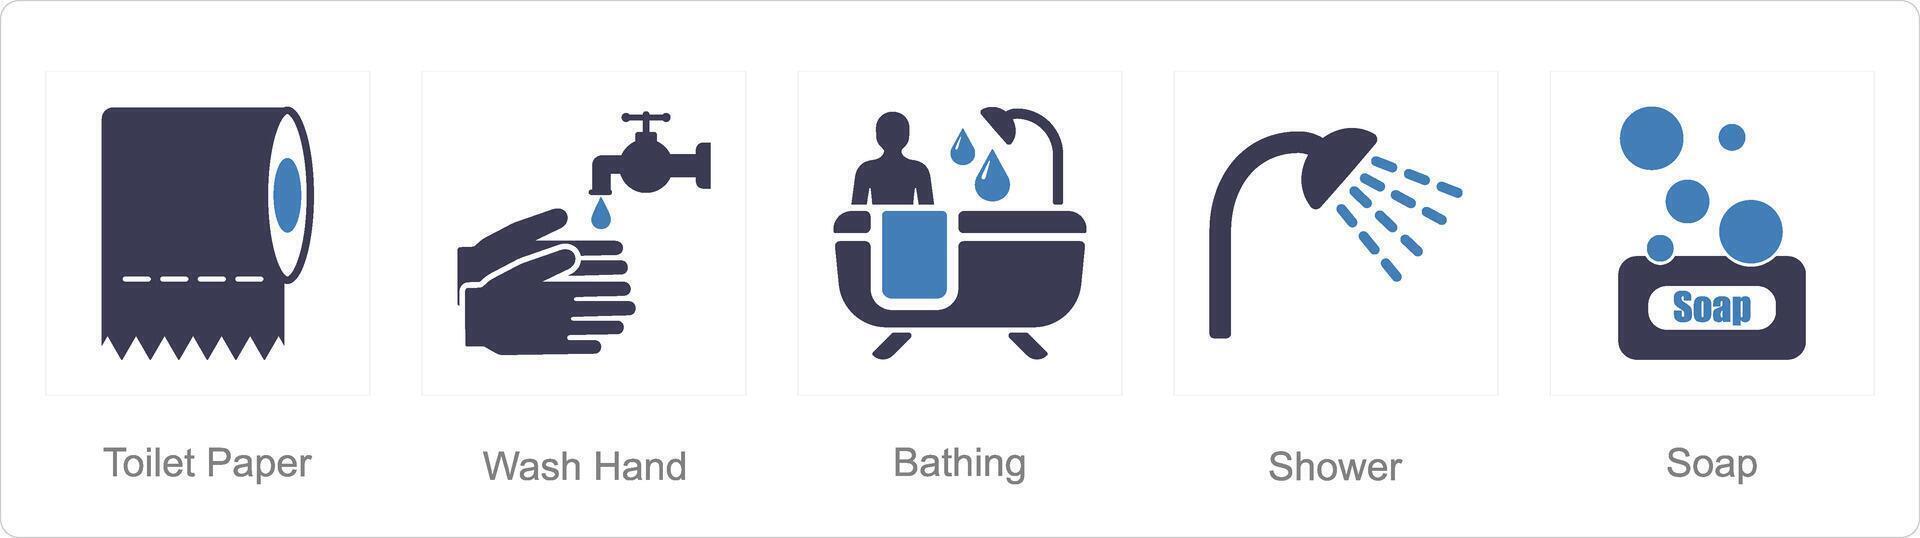 en uppsättning av 5 hygien ikoner som toalett papper, tvätta hand, badning vektor